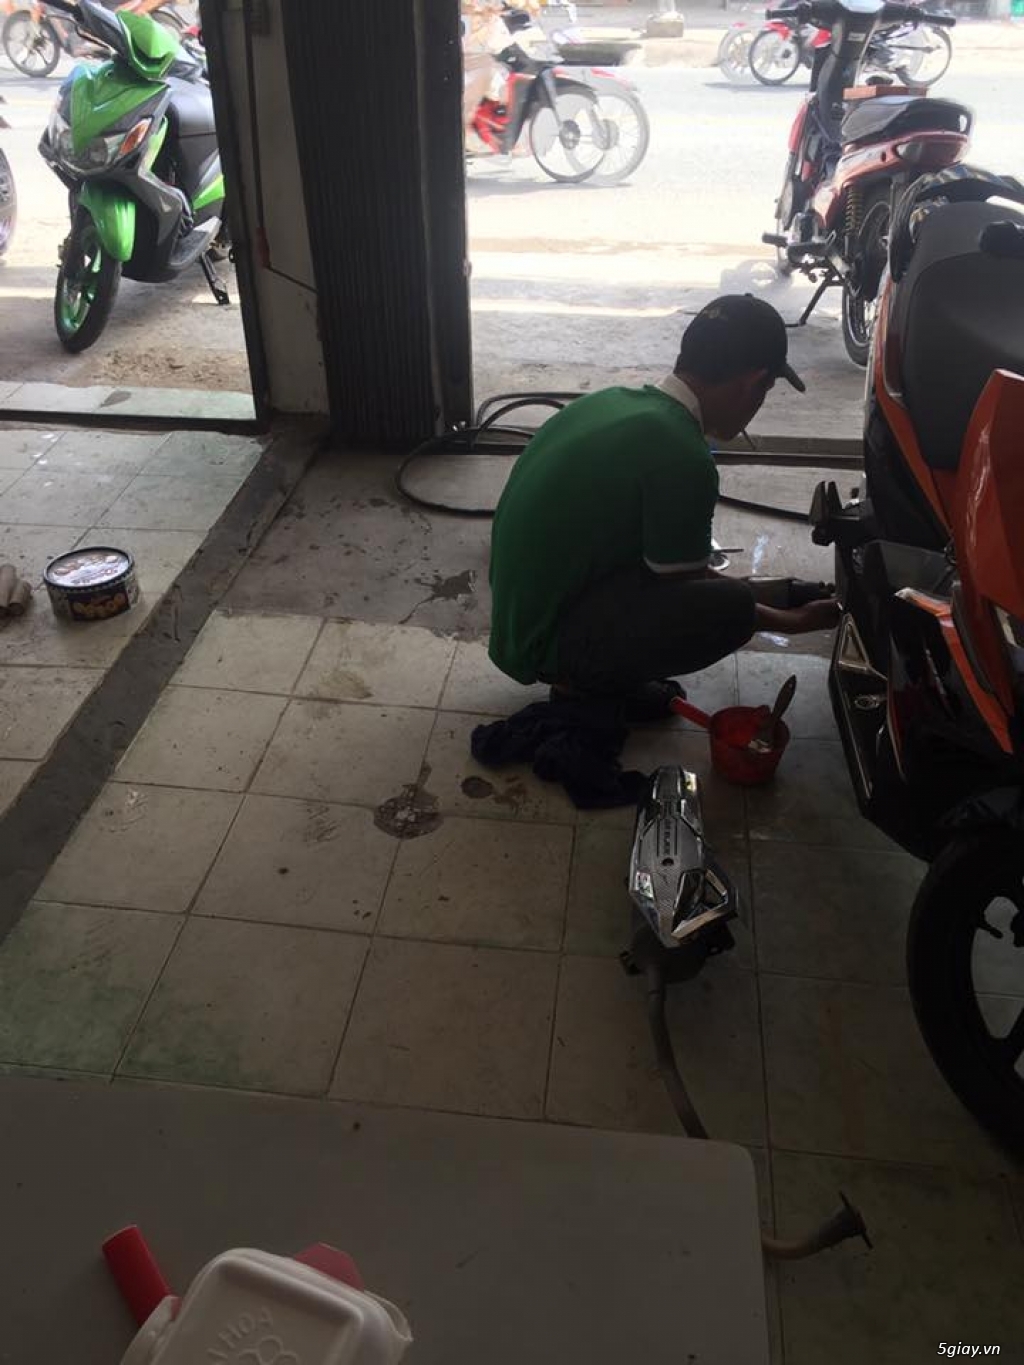 TPHCM - Q.Bình Tân] Tuyễn thợ sửa xe máy và học nghề.. | 5giay